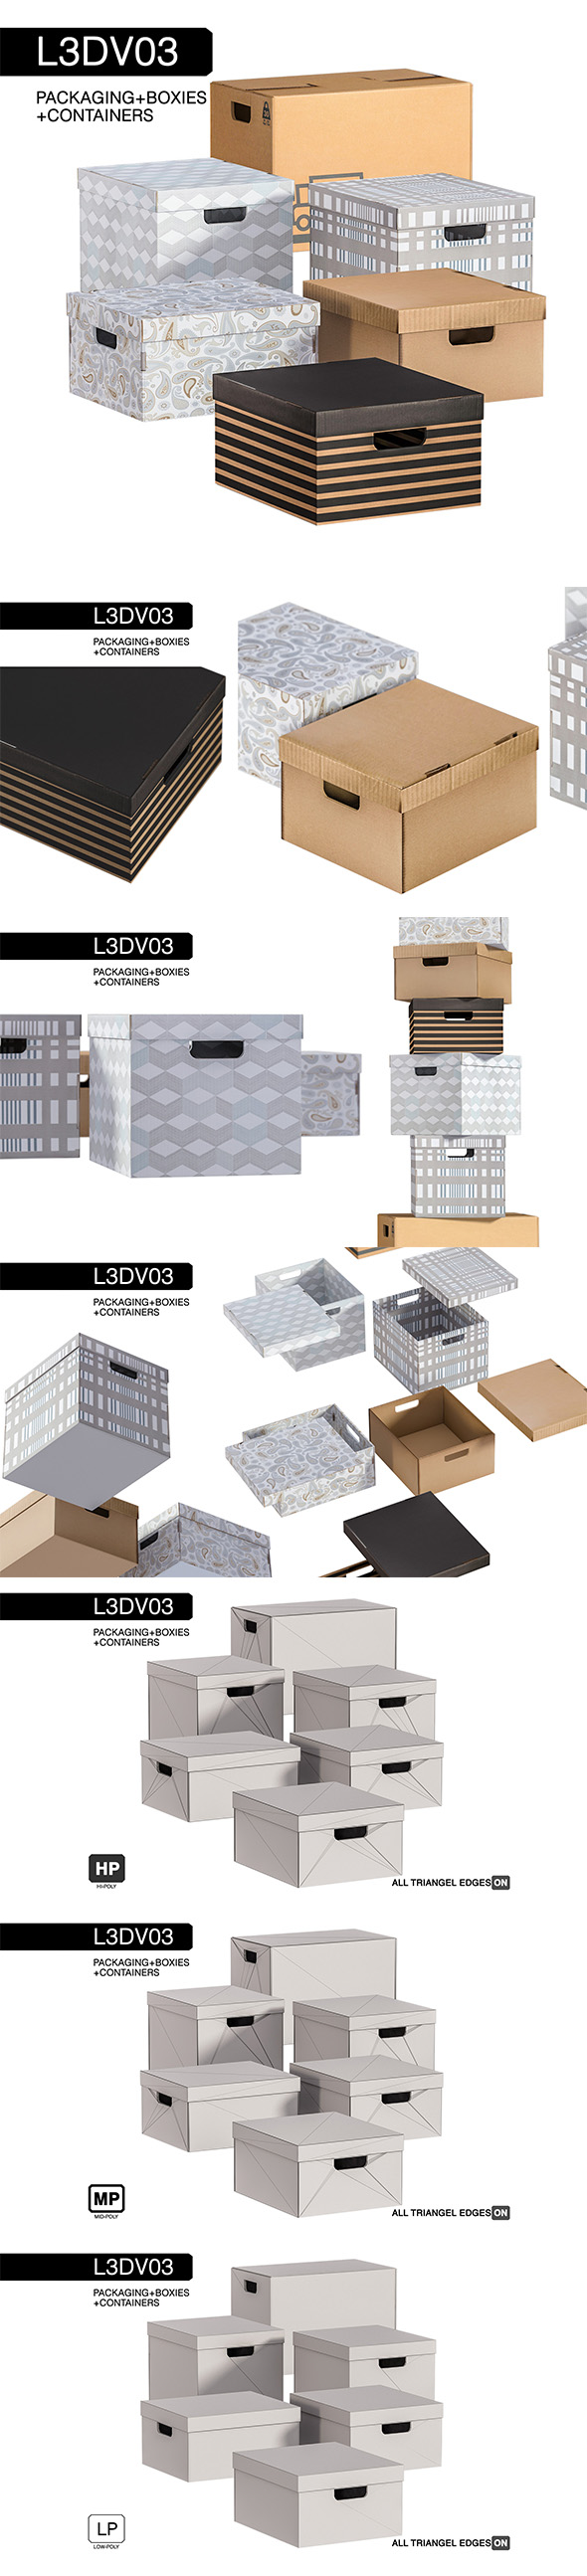 L3DV03G02 - boxes - 3Docean 22533005